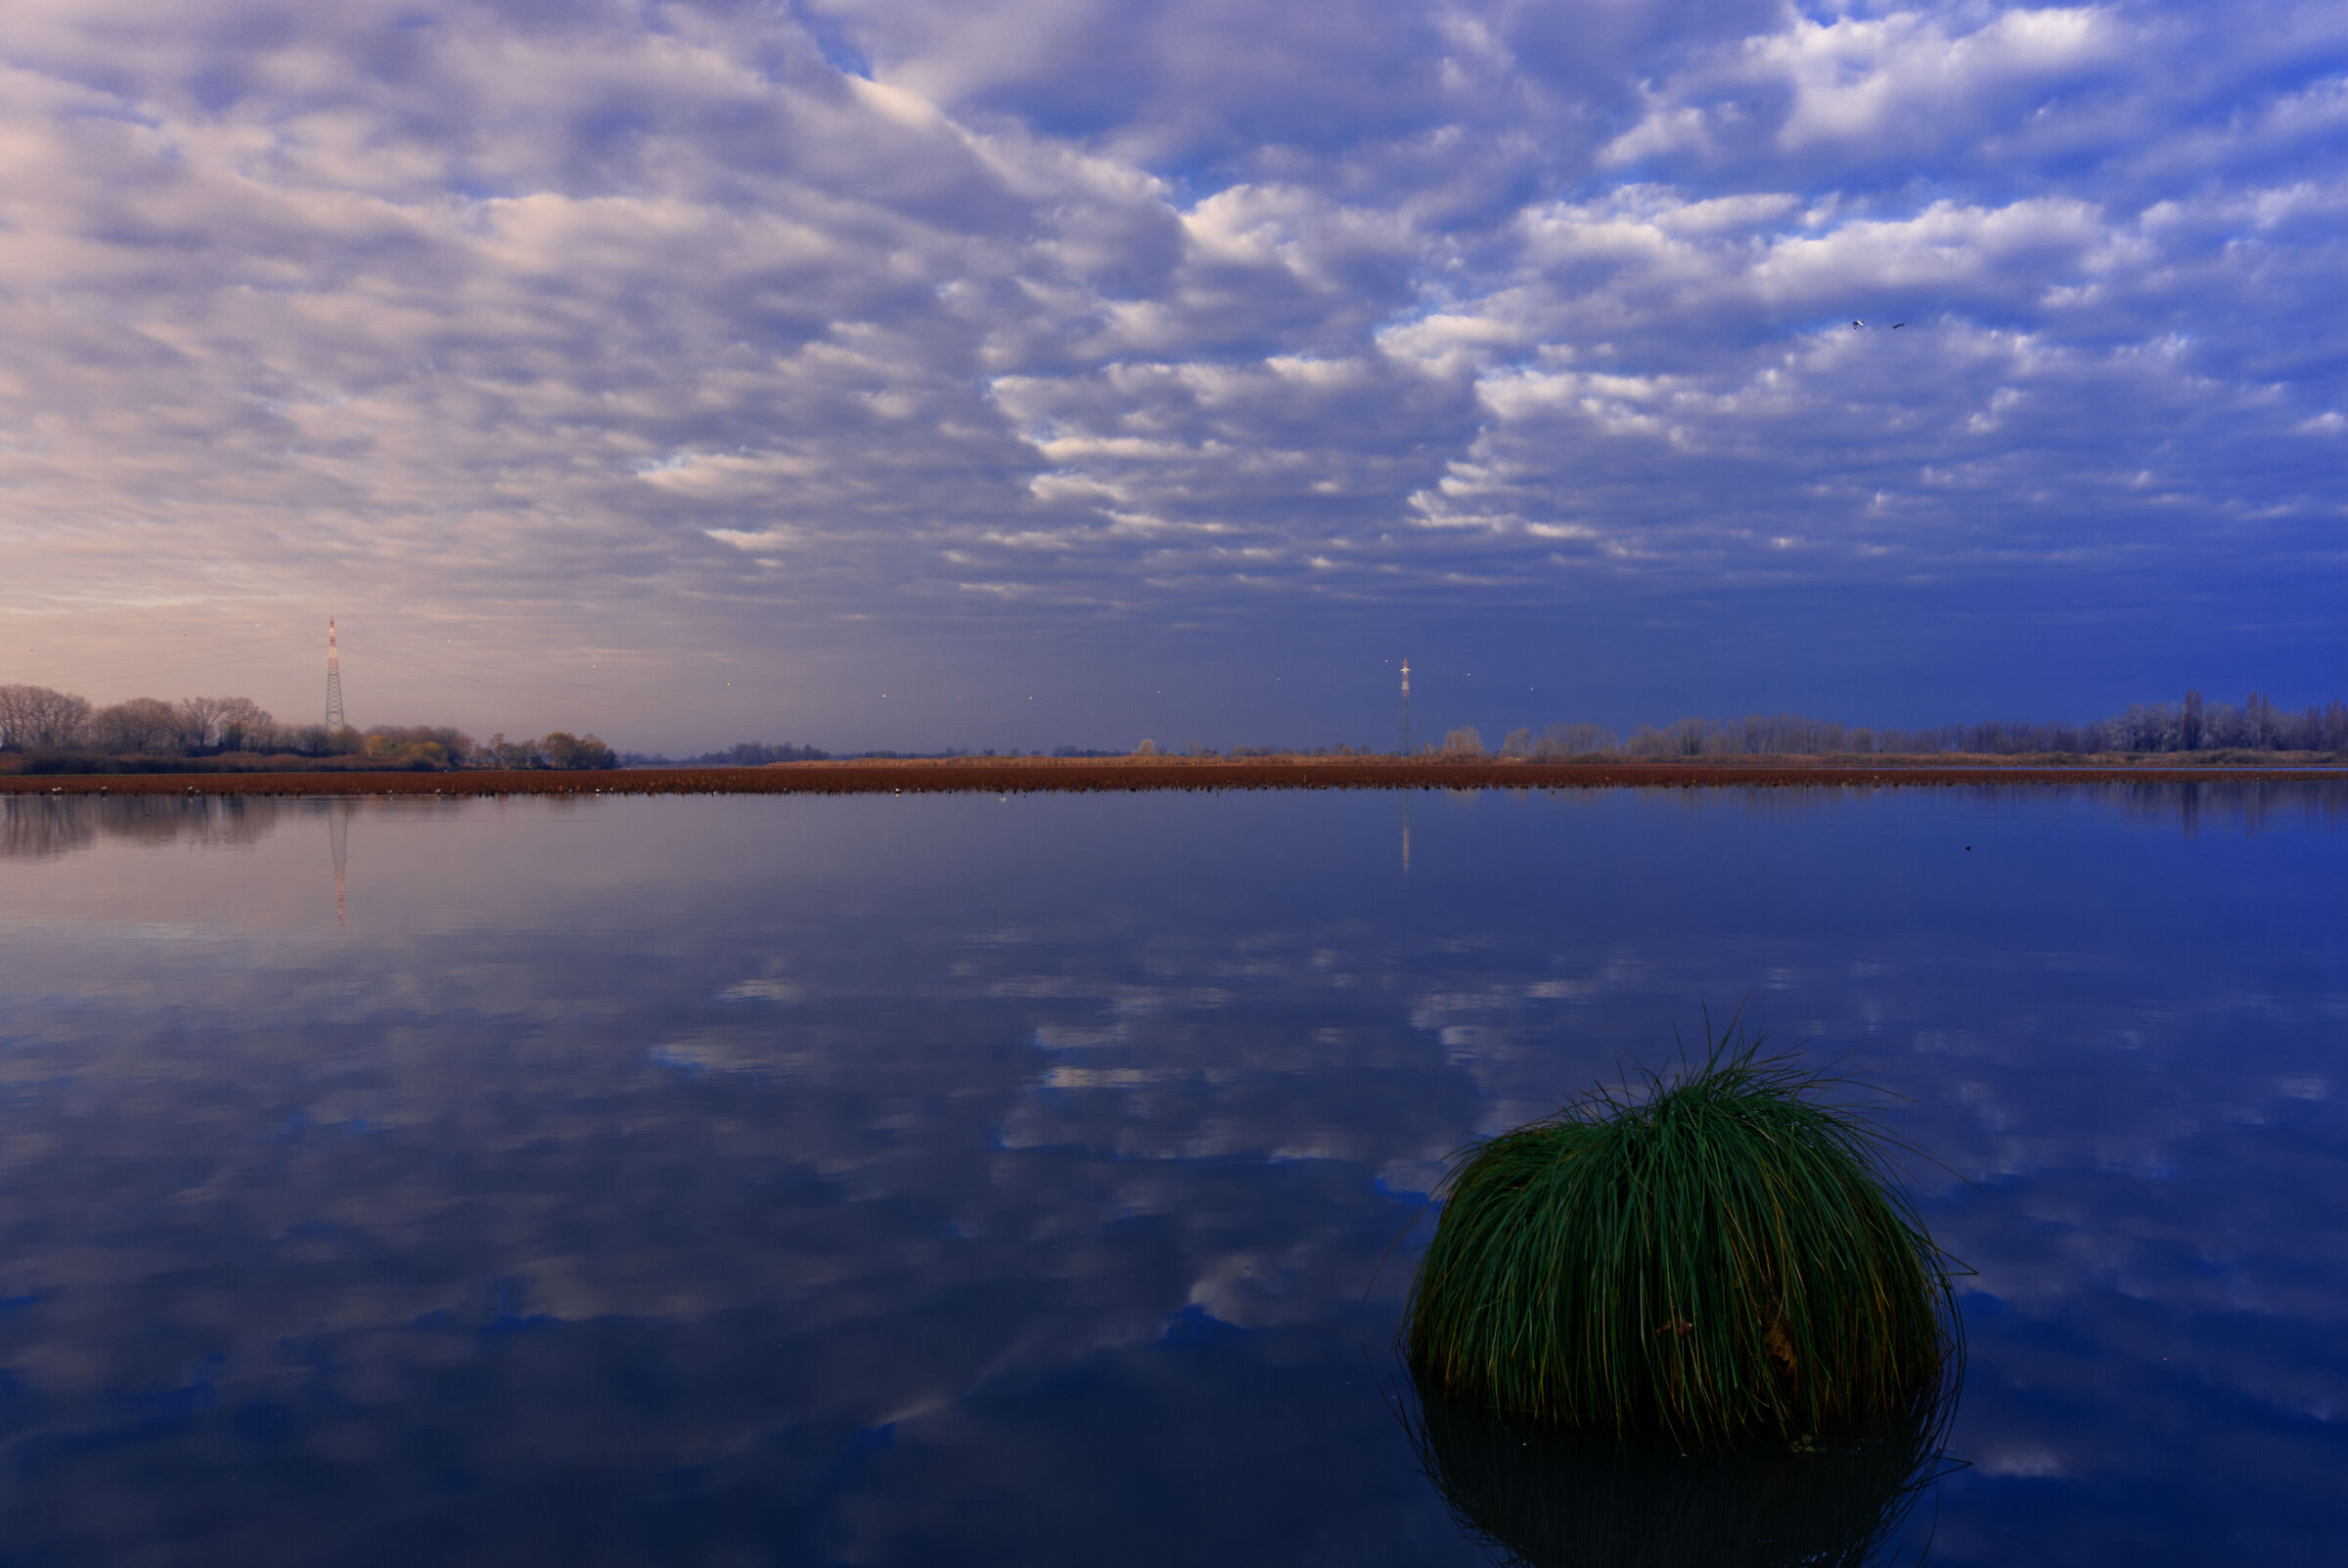 Un cespuglio in mezzo al lago osserva l'alba...